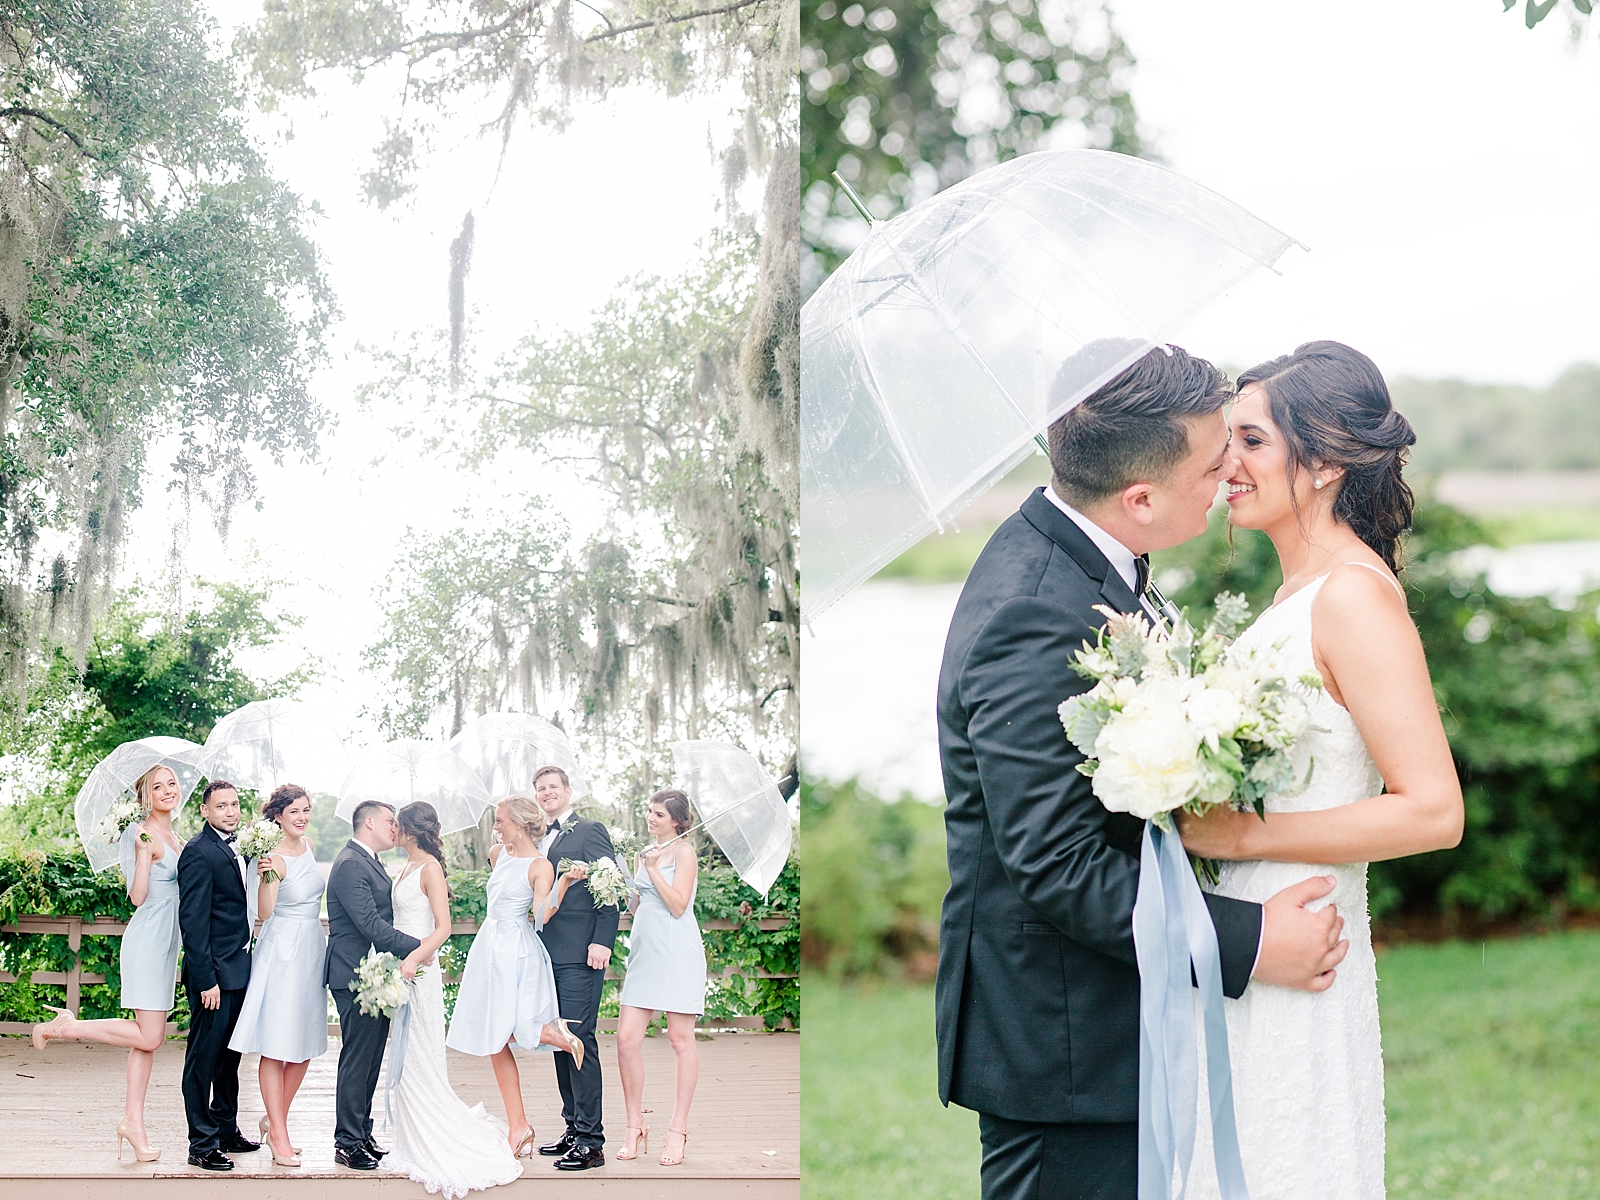 Magnolia Plantation Wedding Bridal Party Under Umbrellas and Bride and Groom Under Umbrella Photos